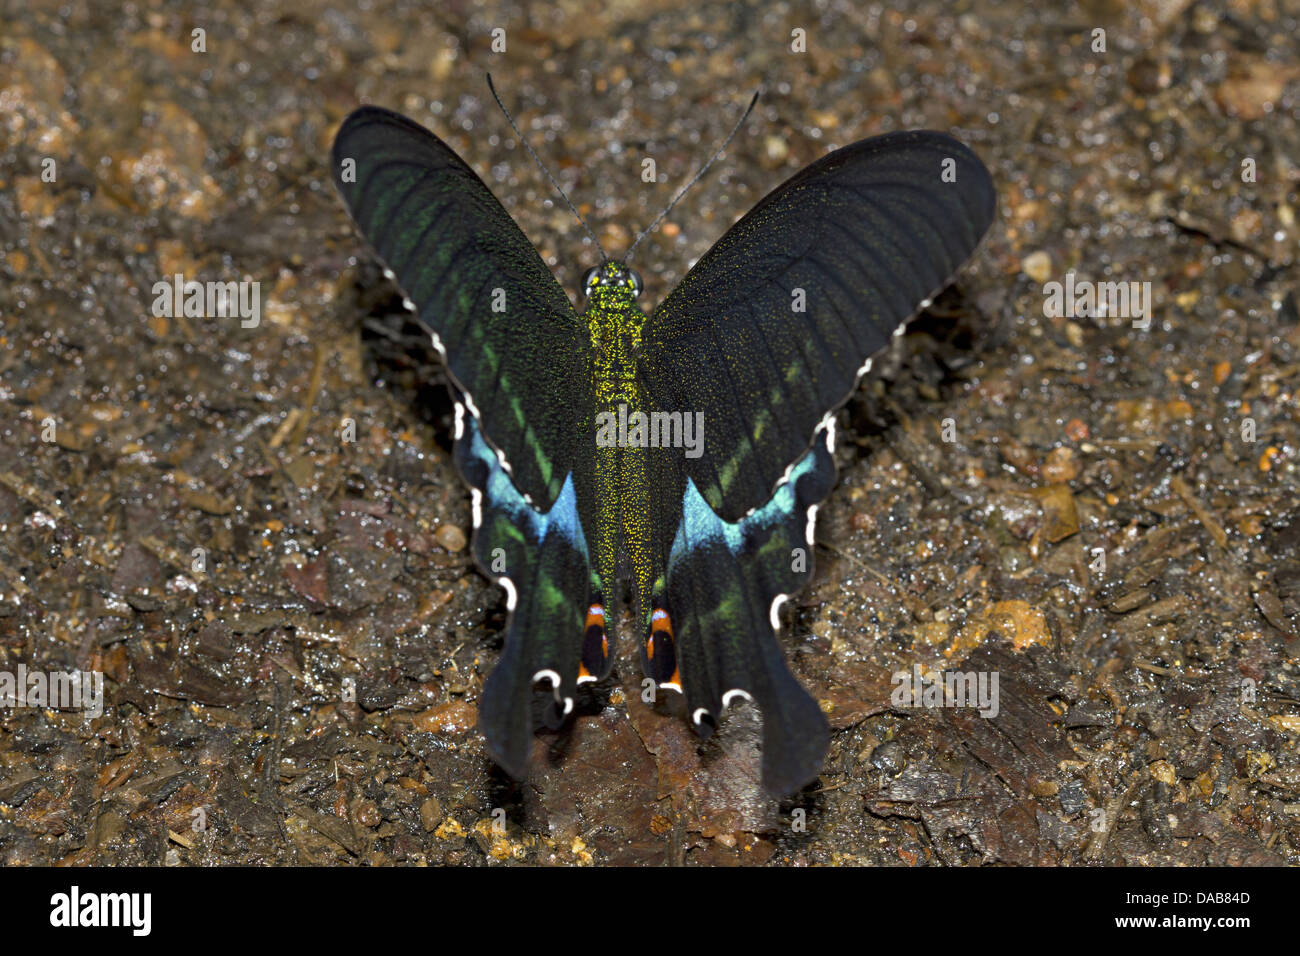 Parigi PEACOCK Papilio di Parigi del Periyar comune Riserva della Tigre, Kerala, India Papilionidae : Swallowtails Foto Stock